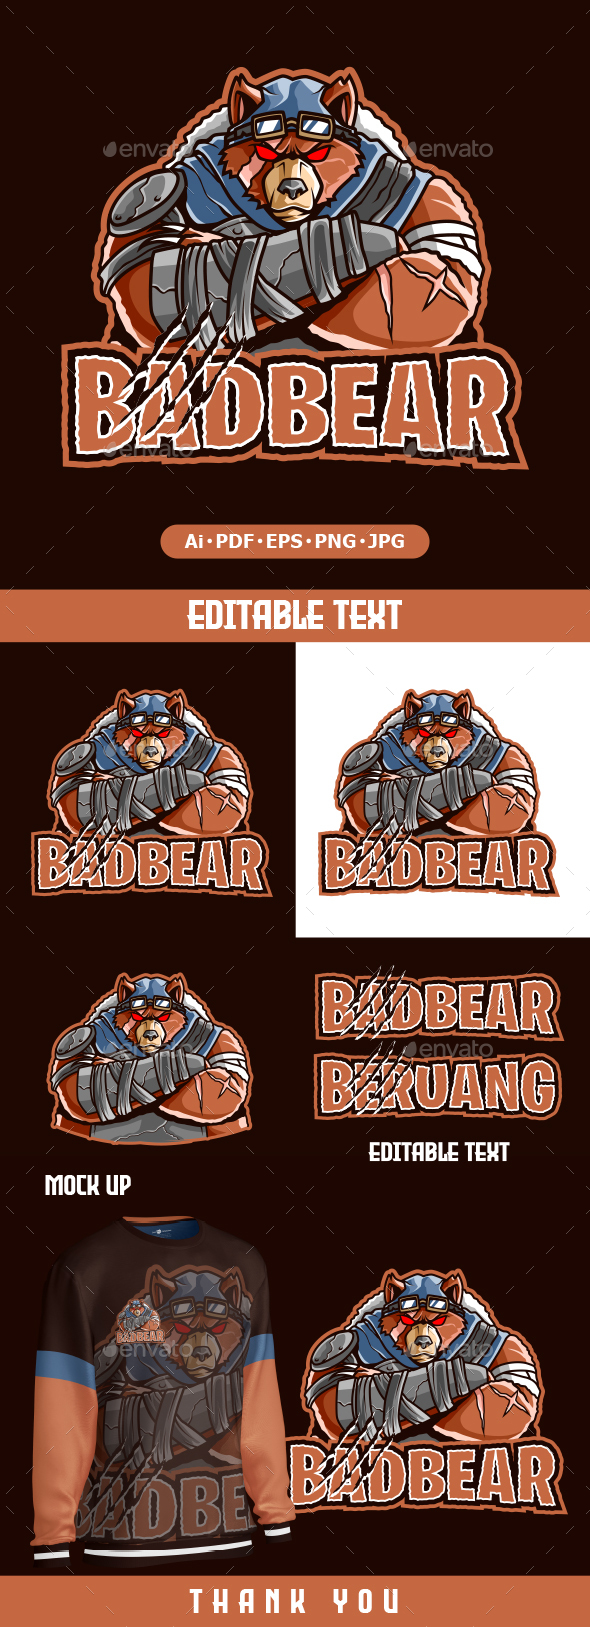 Bear cartoon Mascot logo